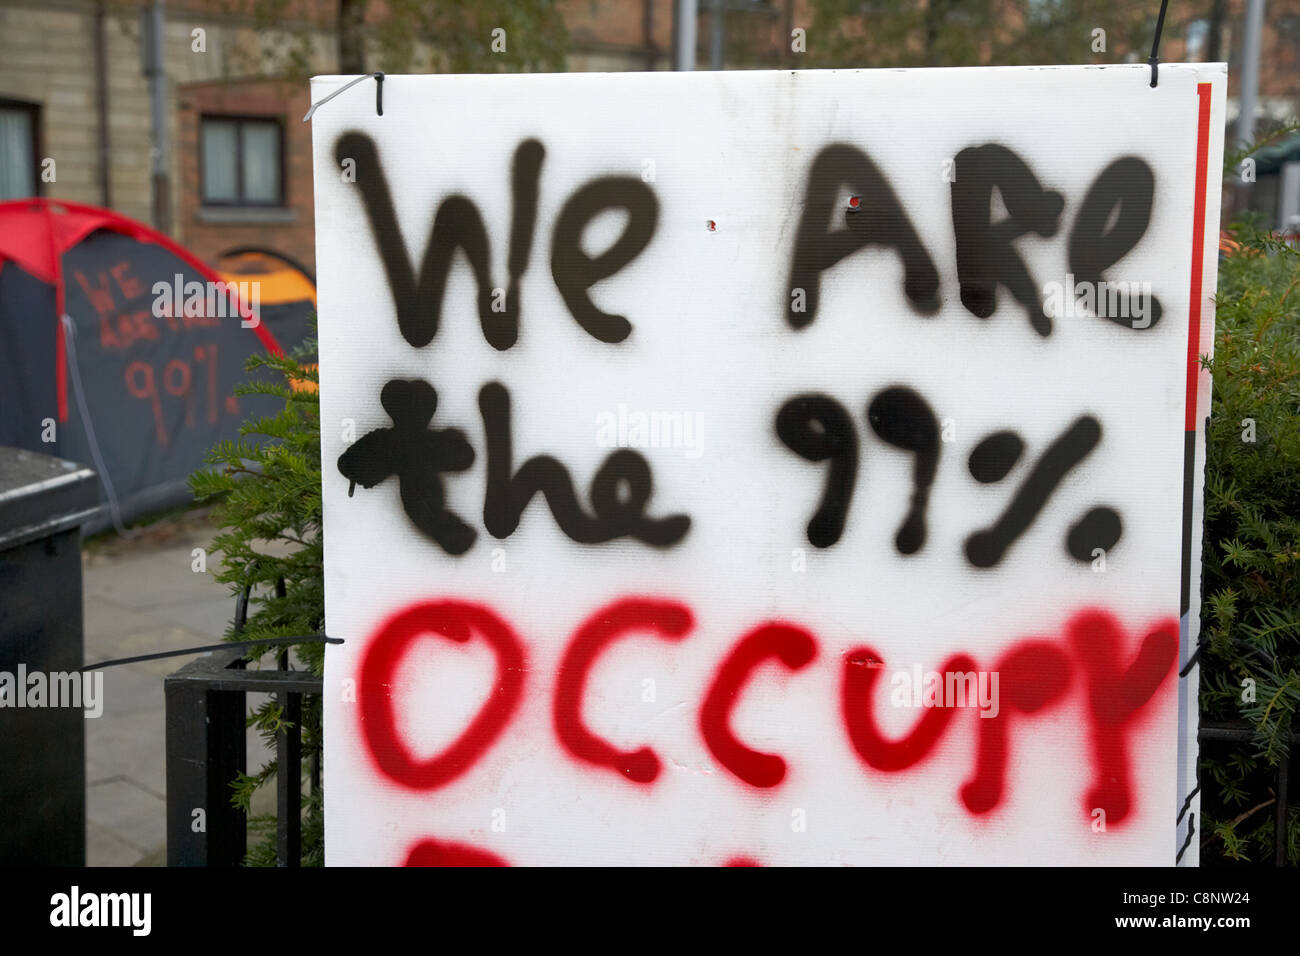 Somos el 99% ocupan anti capitalista de Belfast tented protesta en escritores square belfast Irlanda del Norte reino unido Foto de stock